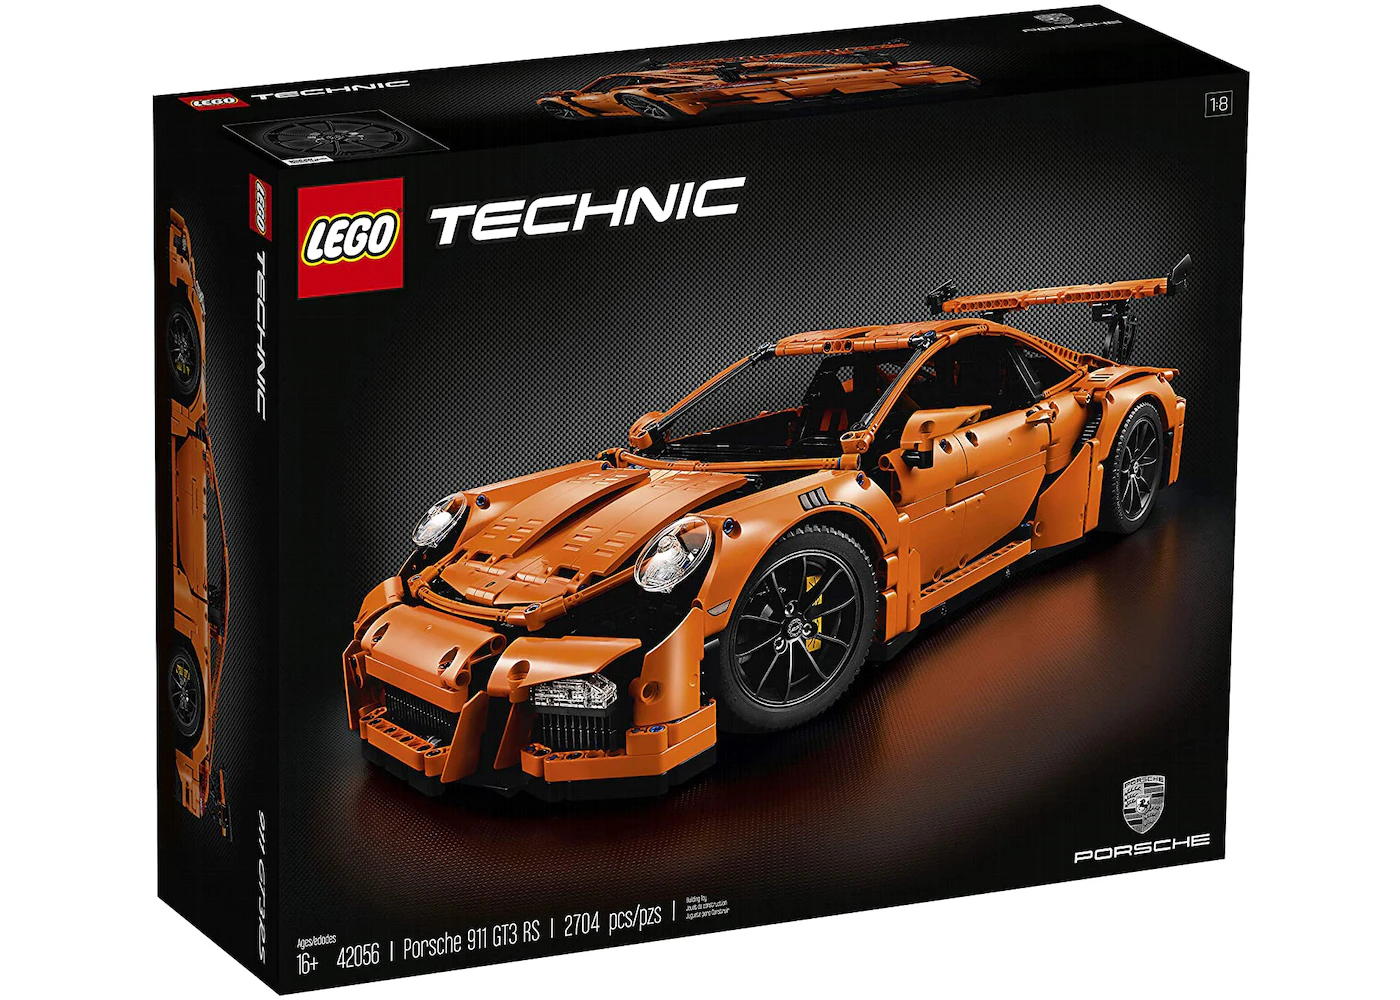 forgiven Joseph Banks compliance LEGO Technic Porsche 911 GT3 RS Set 42056 - US